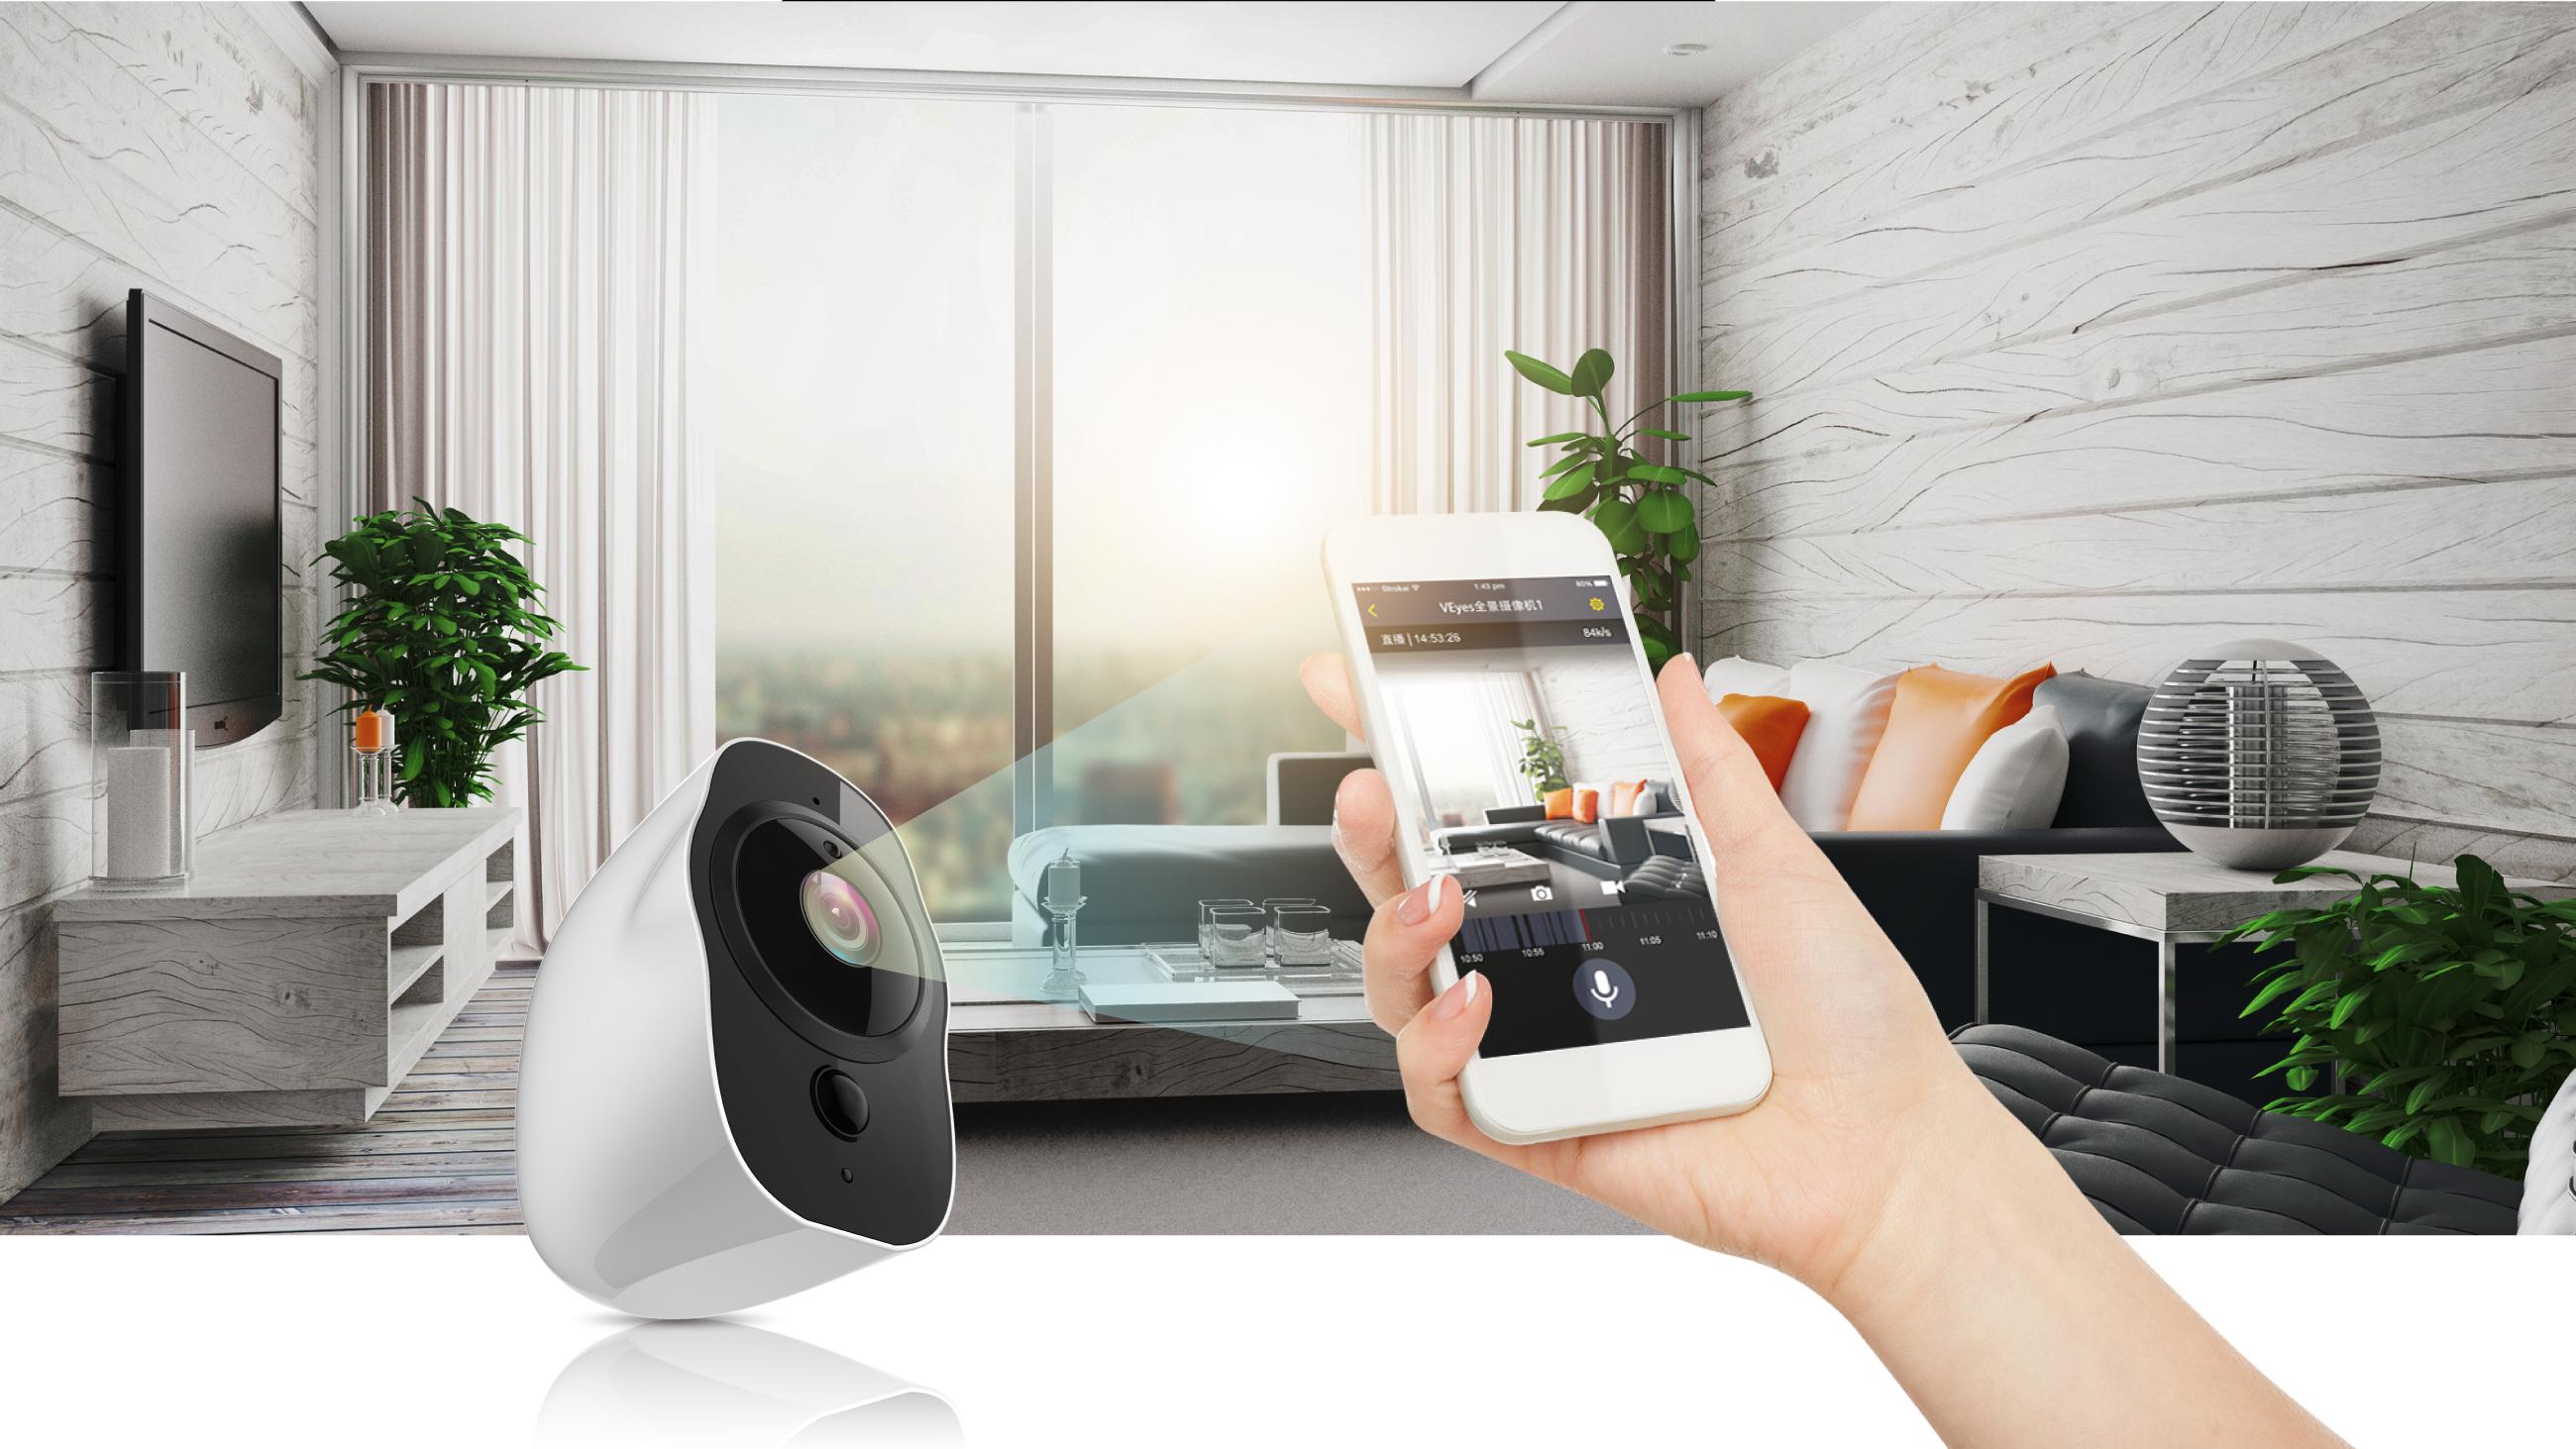 威盛发布vpai home一站式解决方案,打造无线家庭安防视频监控系统